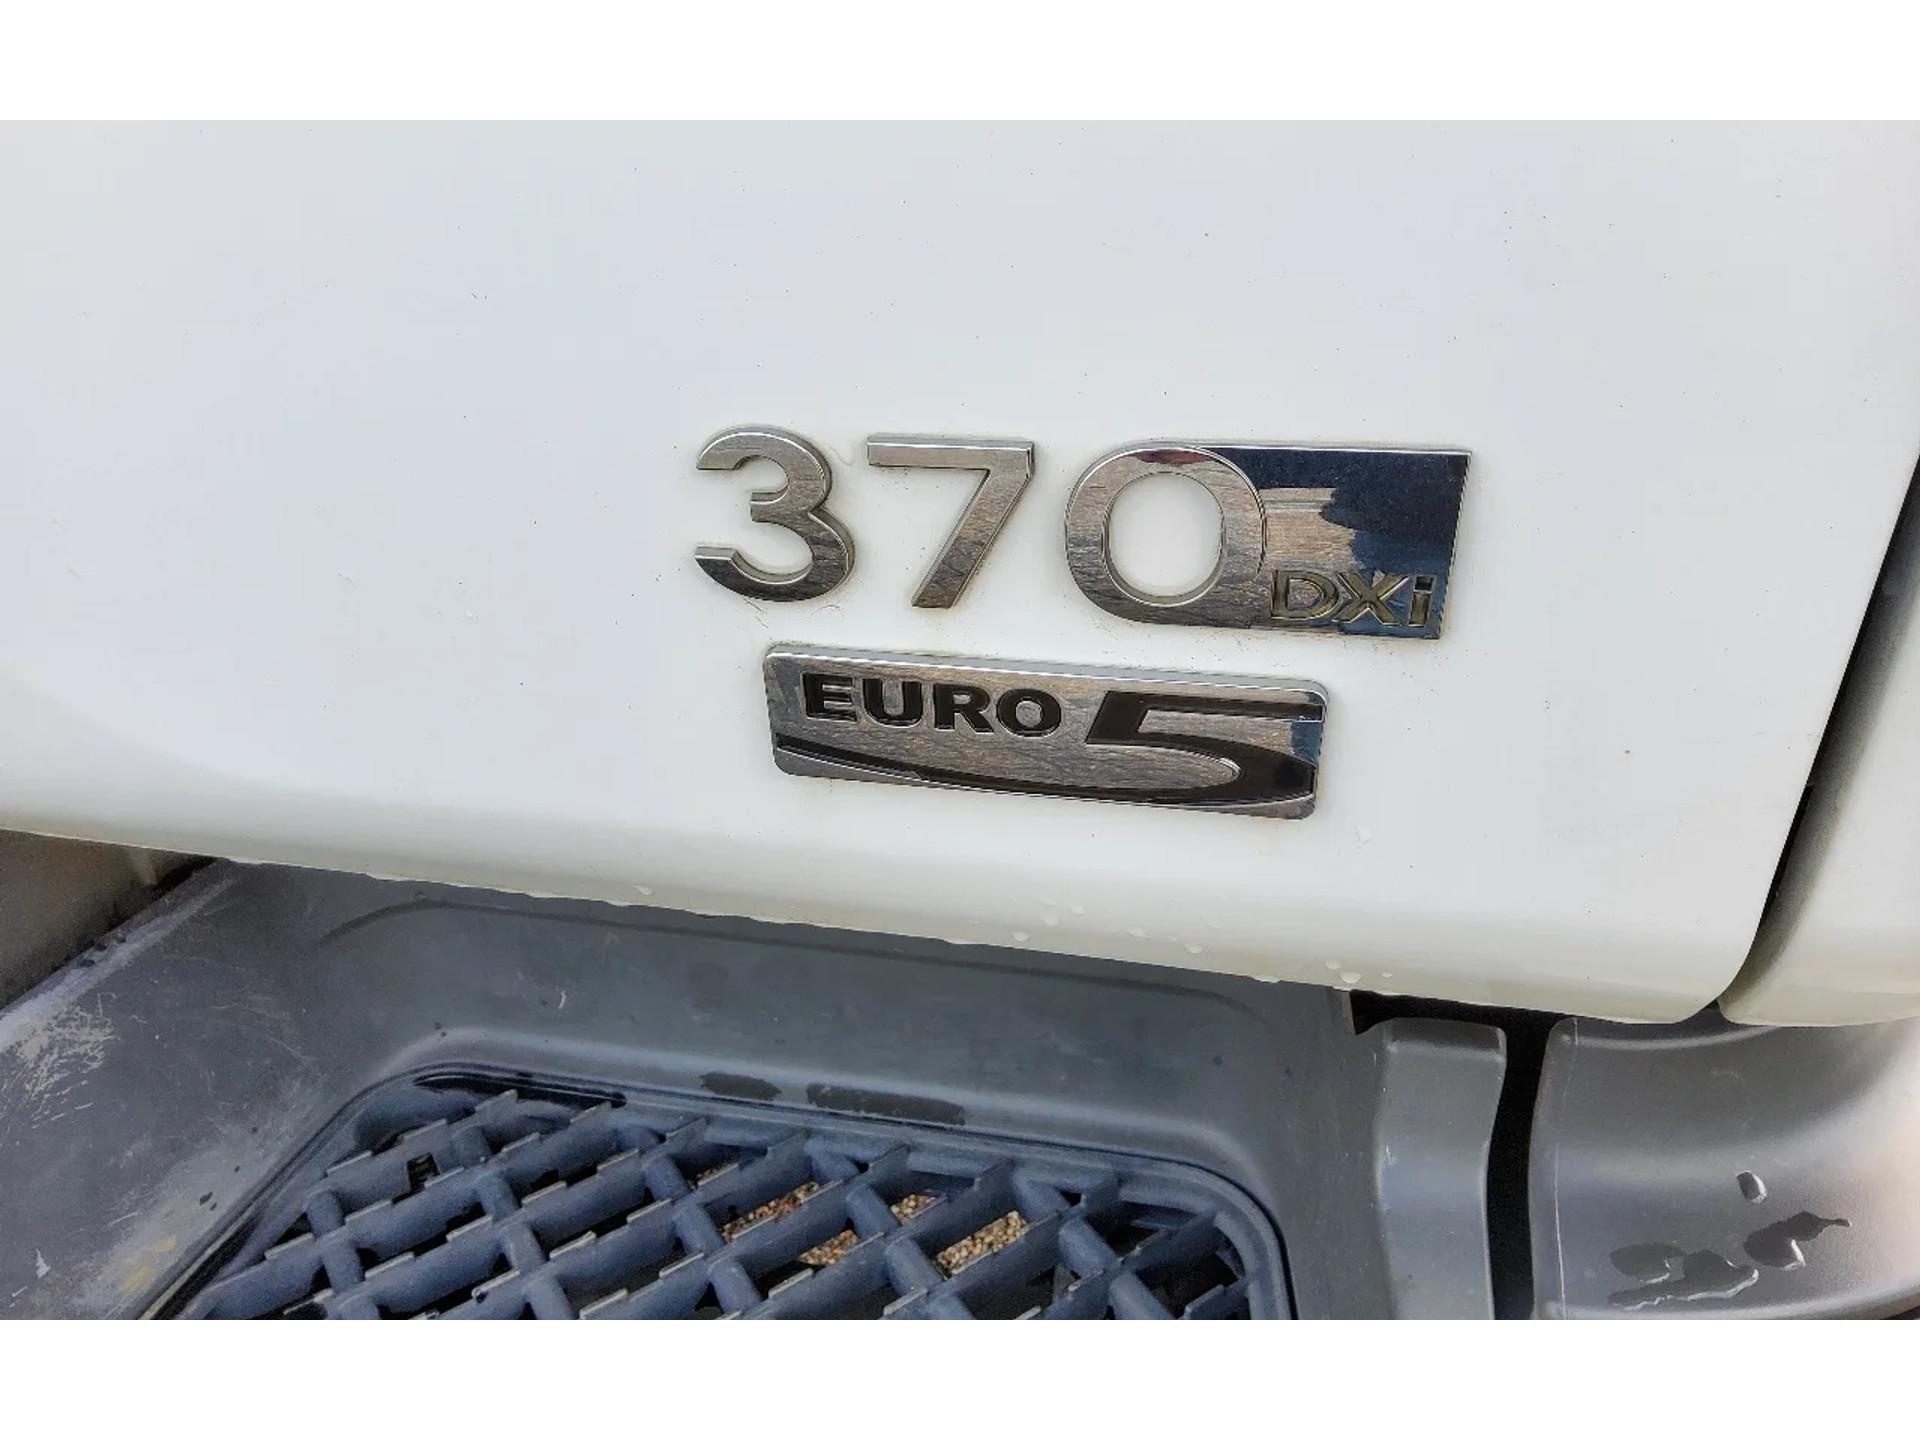 Foto 22 van Renault Premium 370 26 TON 6x2 D EL GESTUURD - EURO 5 - KIPPER + ATLAS TEREX KRAAN + RADIO - BV-XD-09